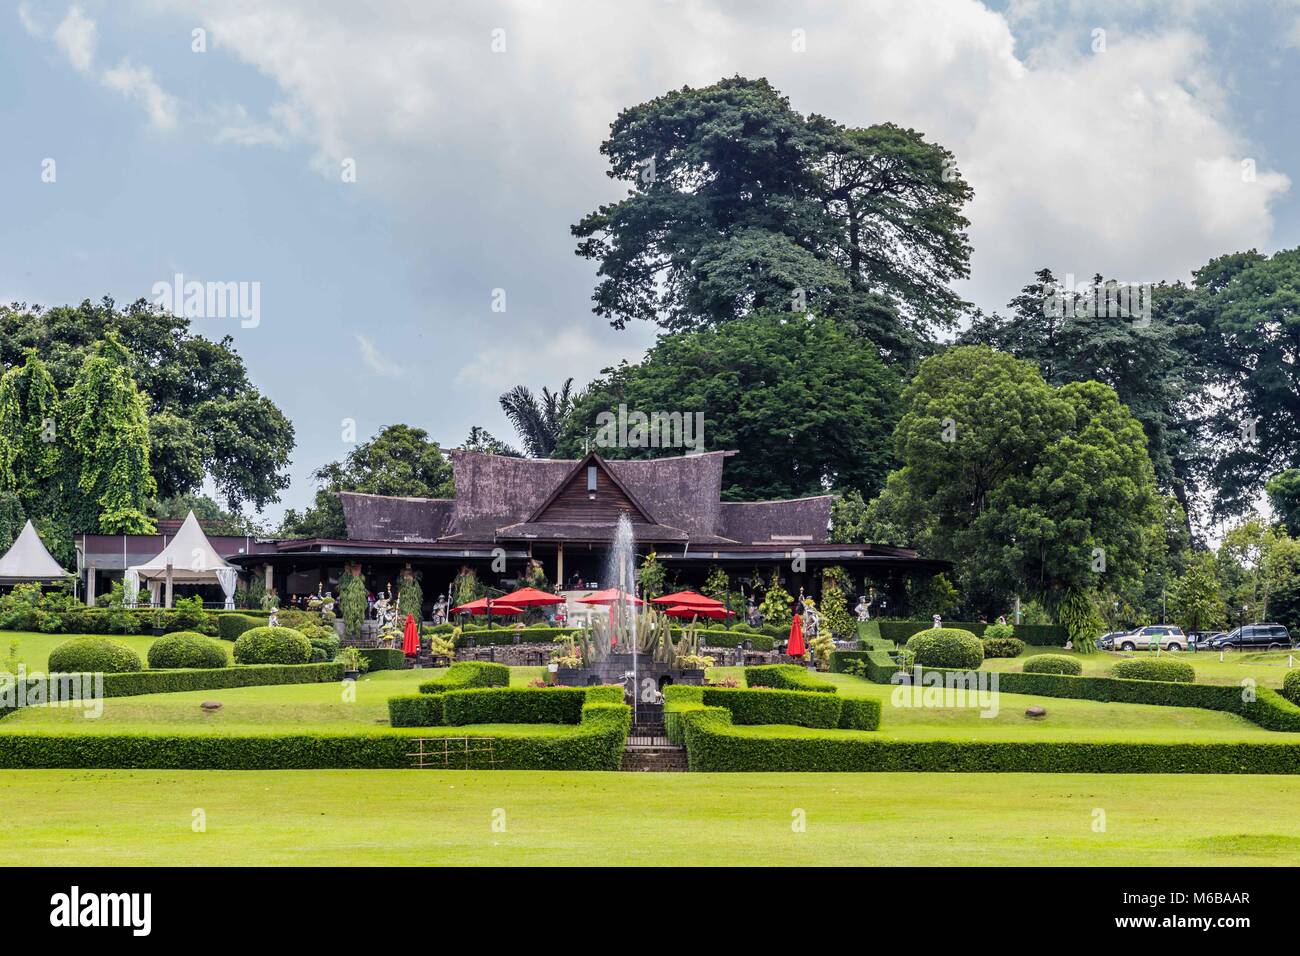 Botanical Gardens Kebun Raya In Bogor West Java Indonesia Stock Photo Alamy